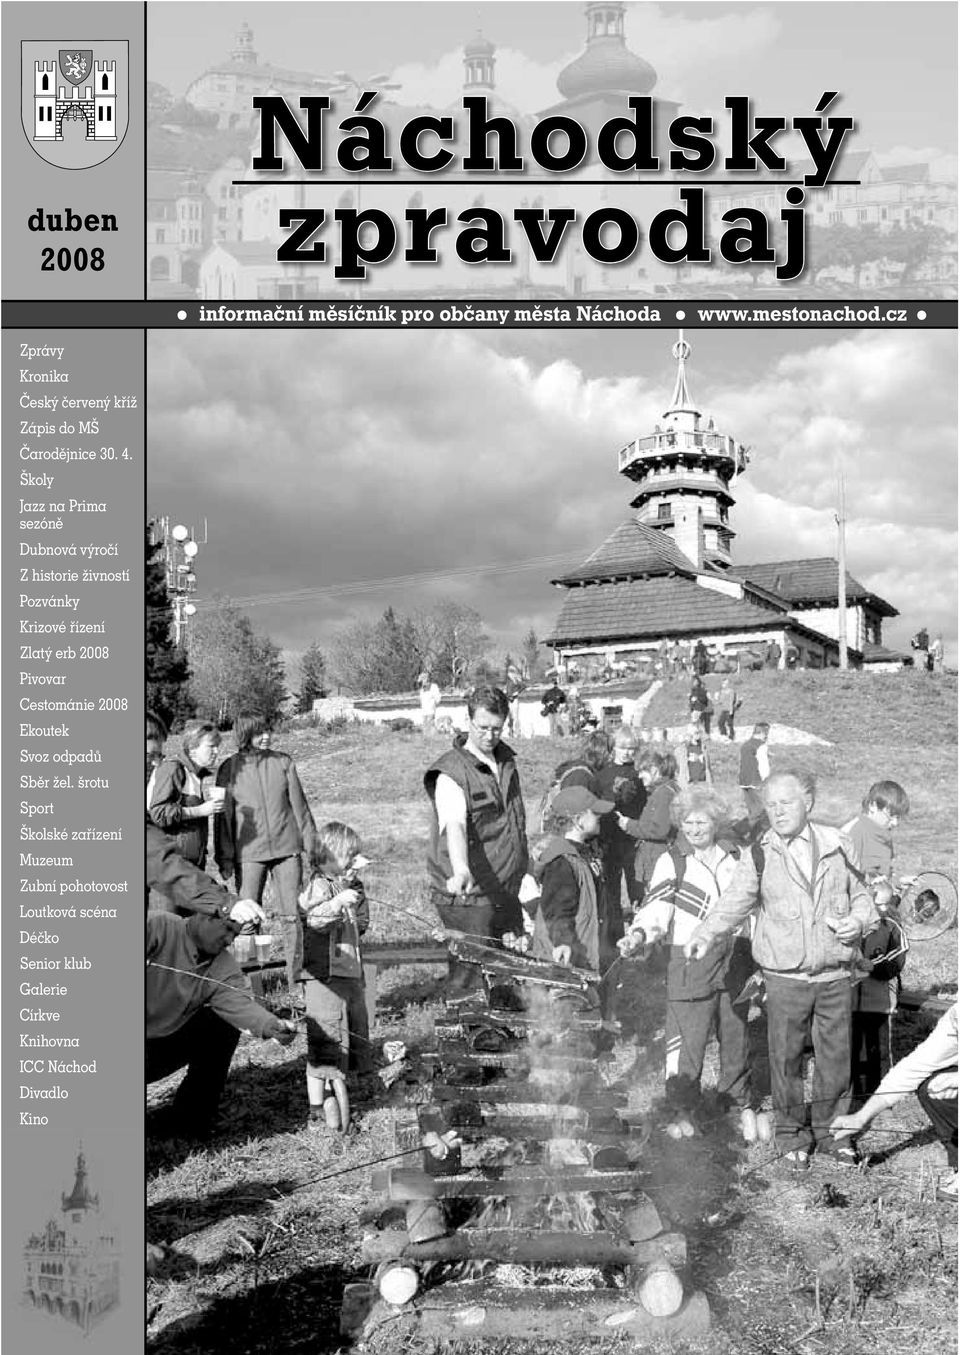 Cestománie 2008 Ekoutek Svoz odpadů Sběr žel.